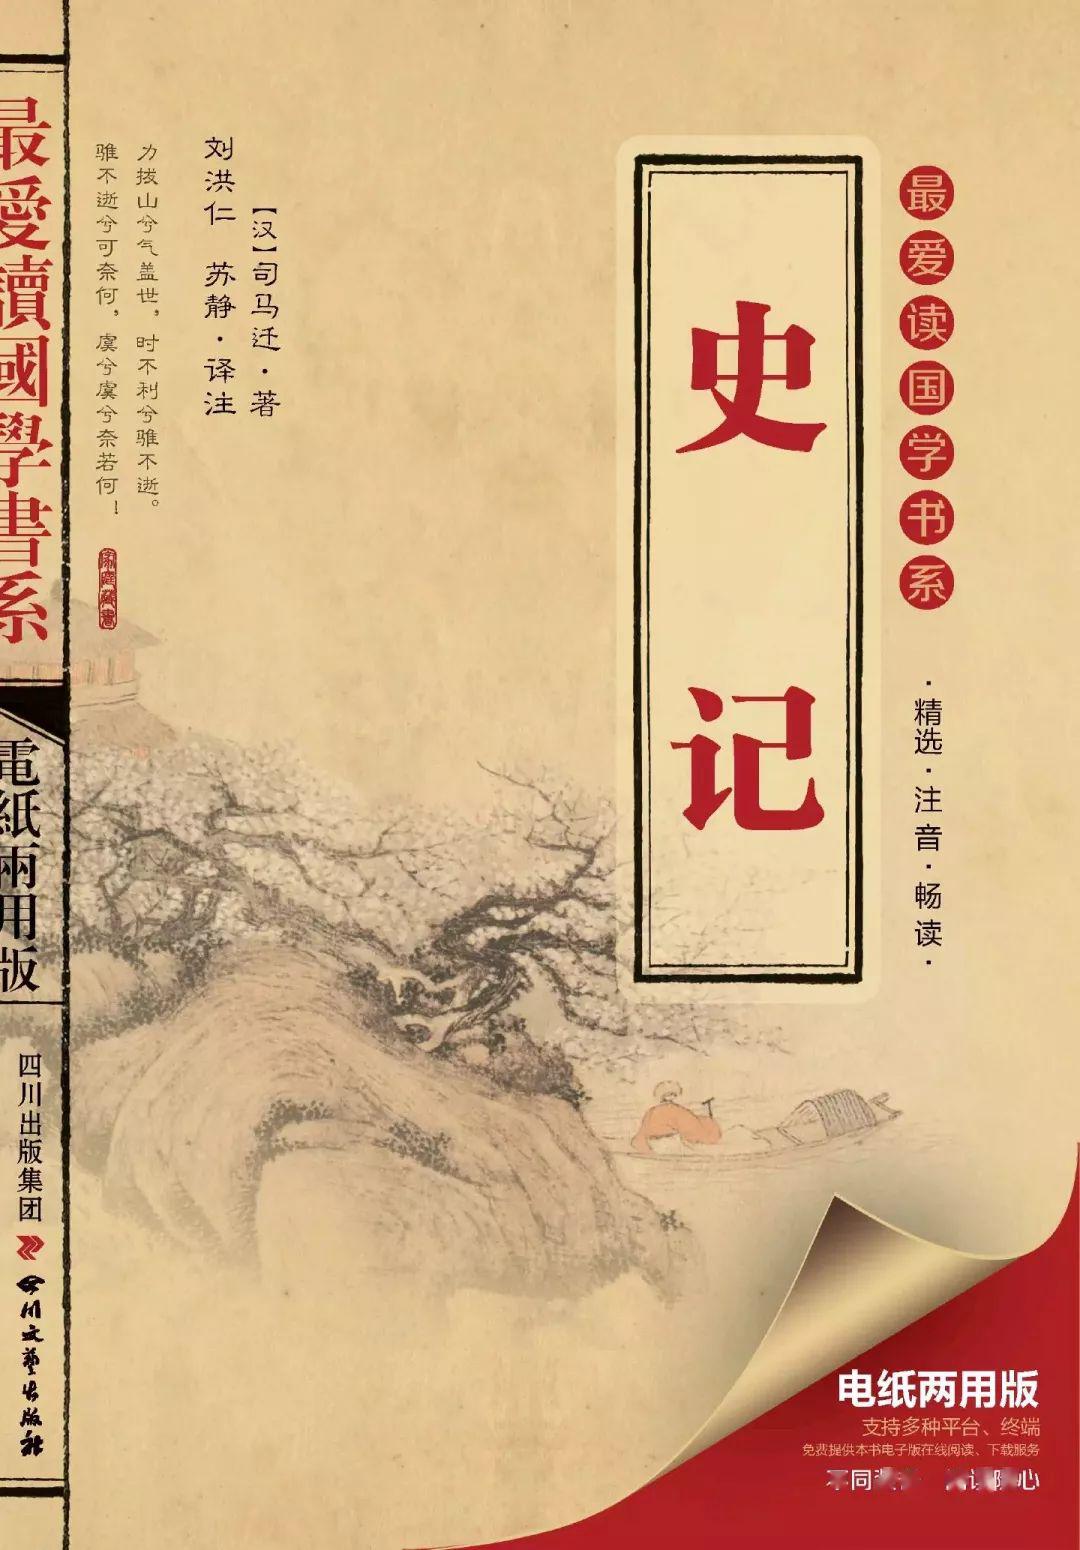 《史记》《史记》是西汉史学家司马迁撰写的纪传体史书,是中国历史上